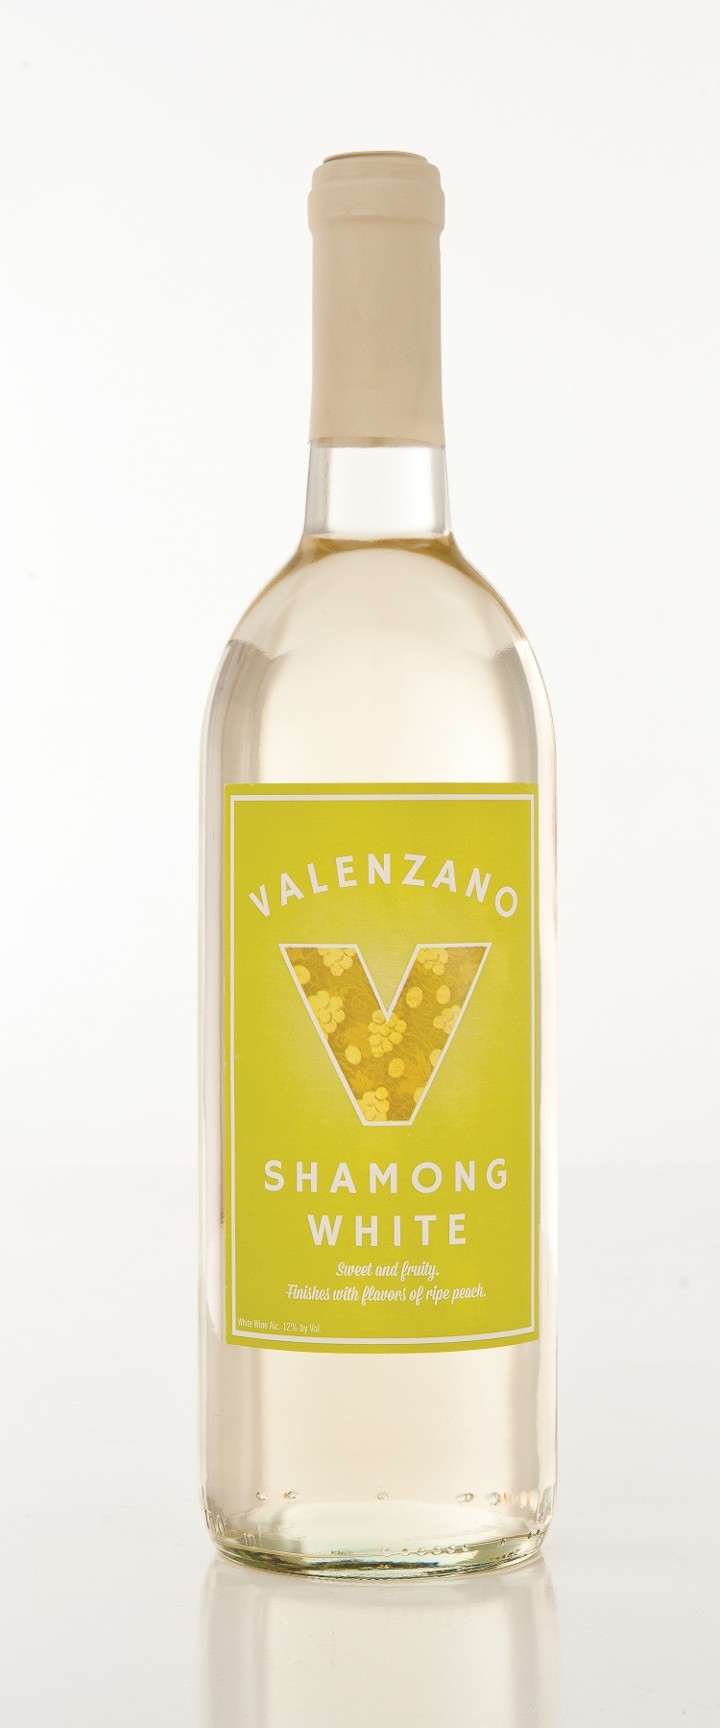 Shamong White Bottle